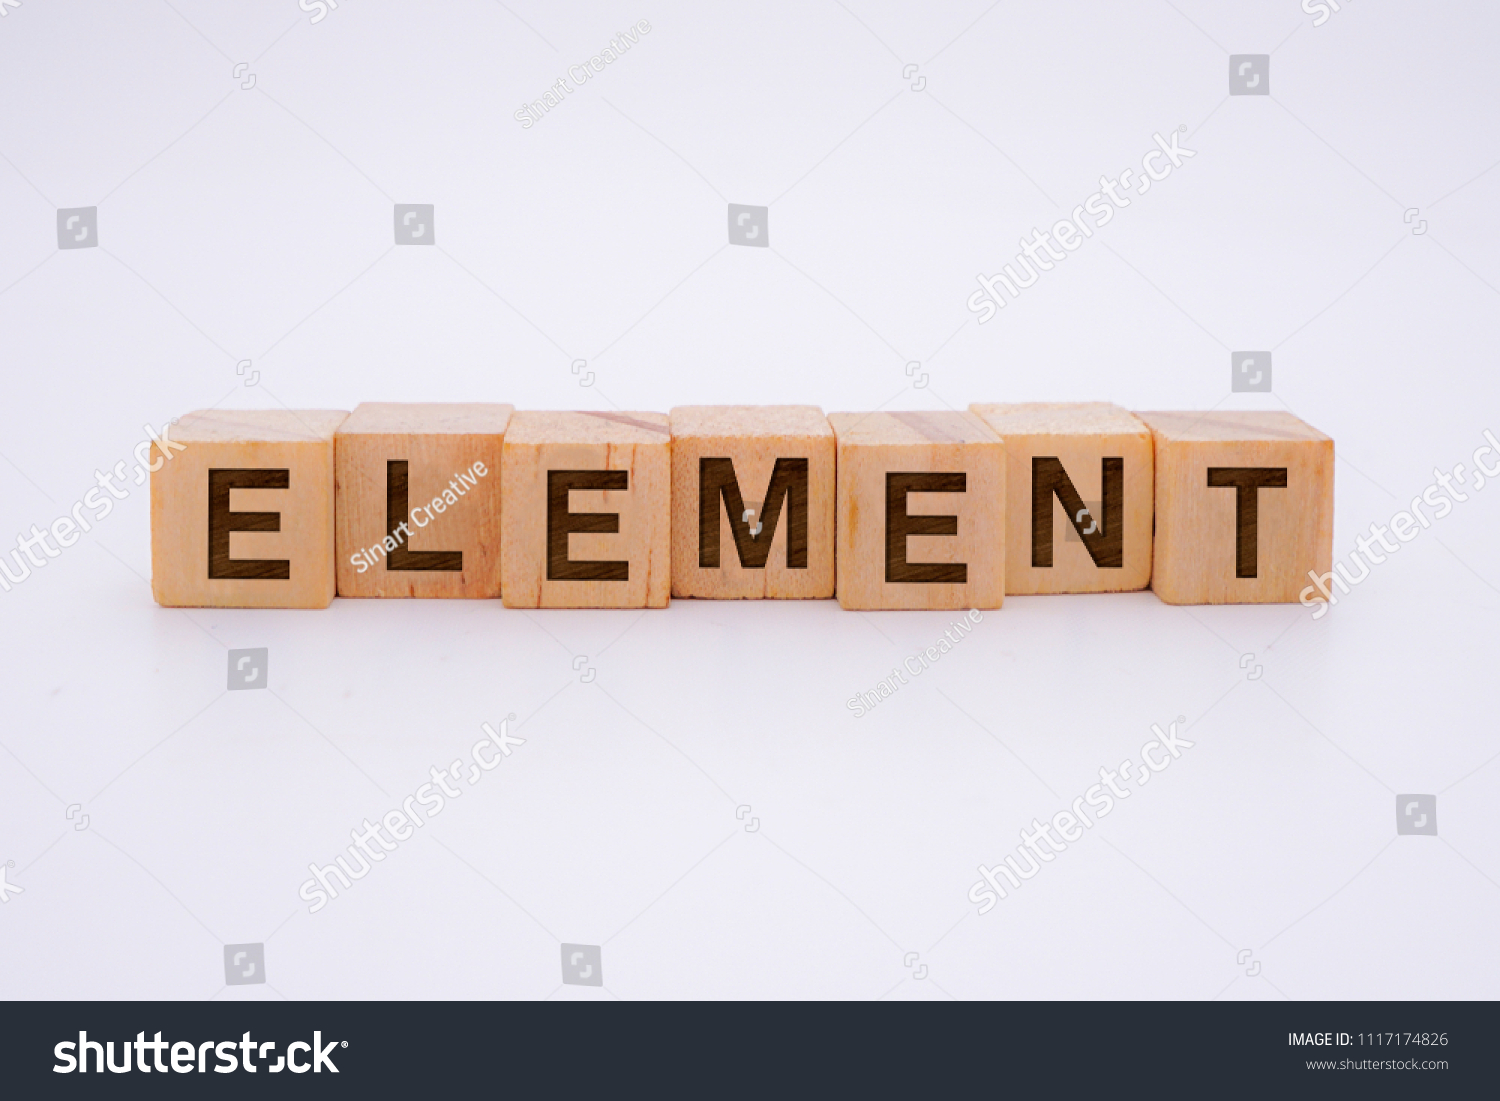 Element Word Written In Wooden Cube #1117174826